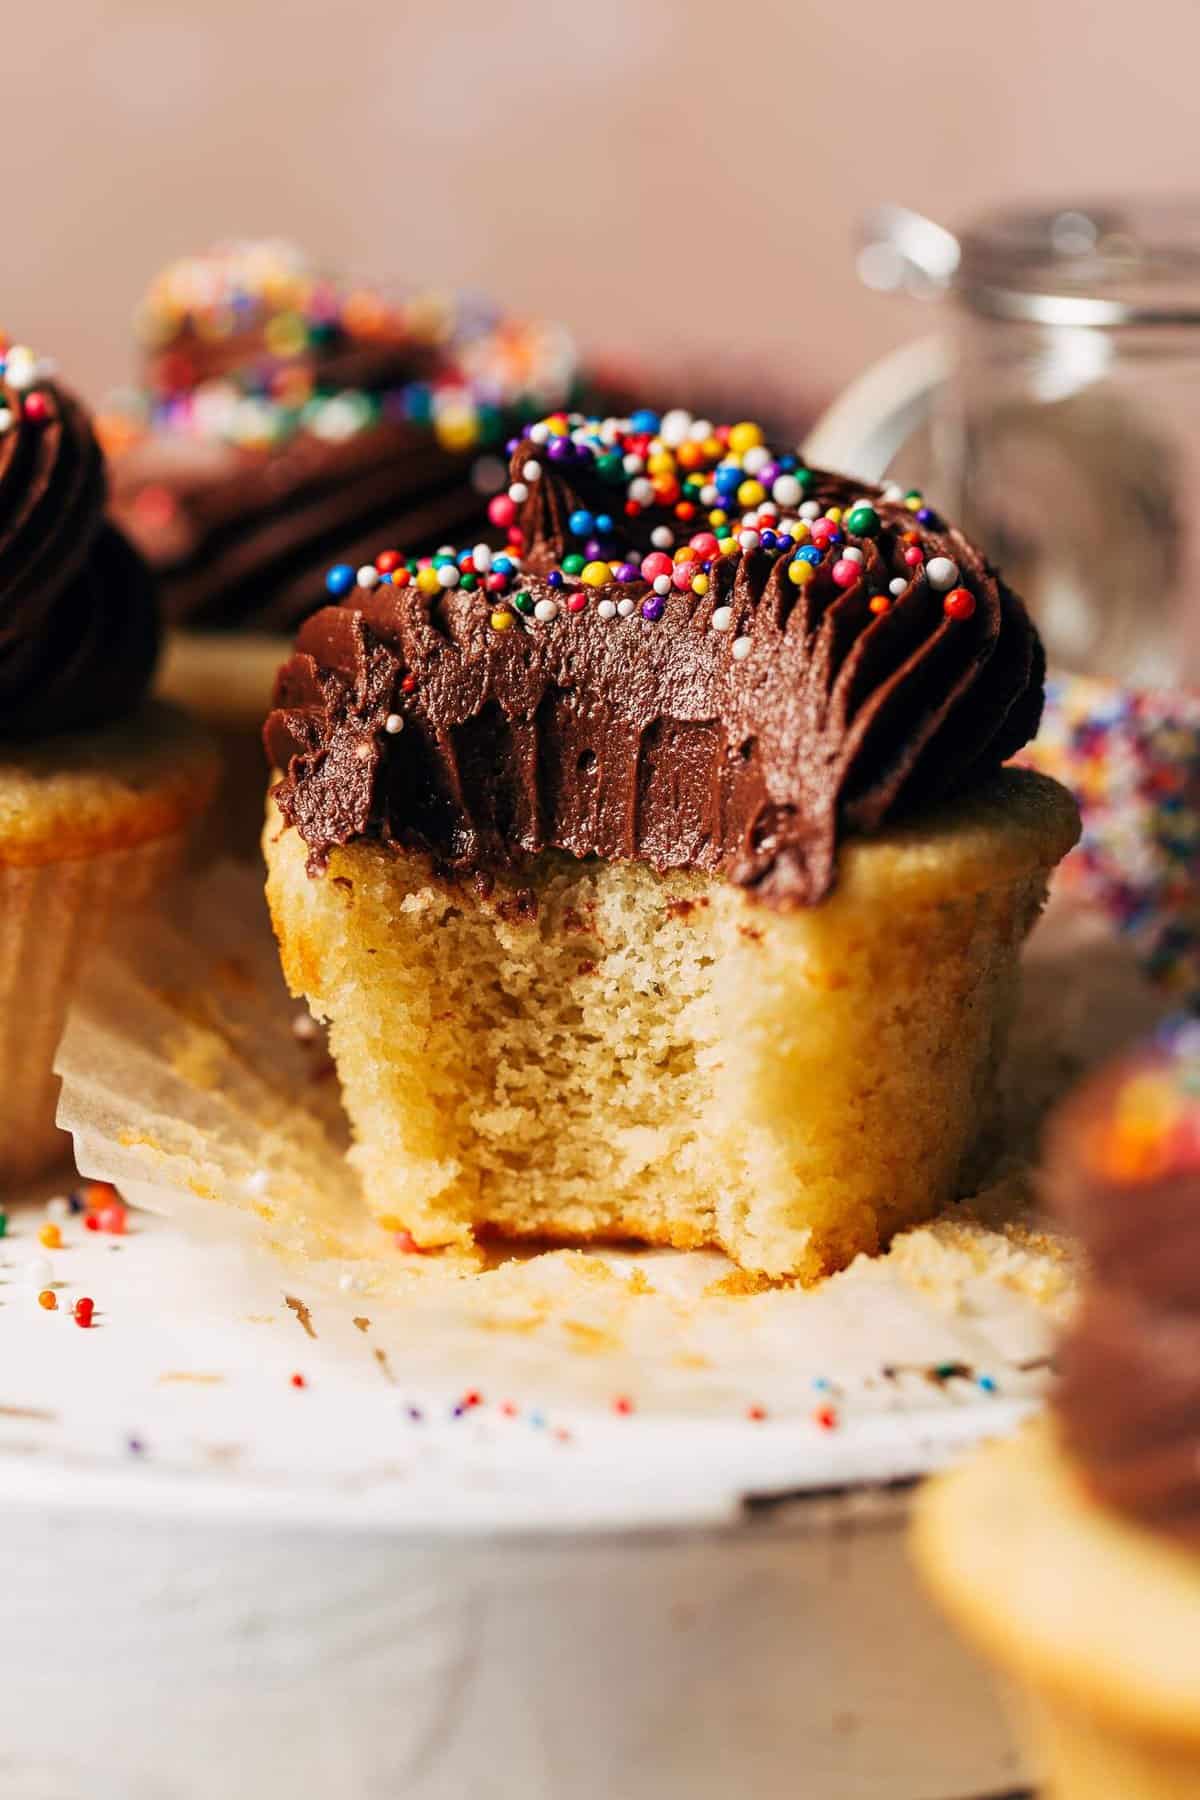 Cupcake to Go Cupcake Holder - Baking Bites